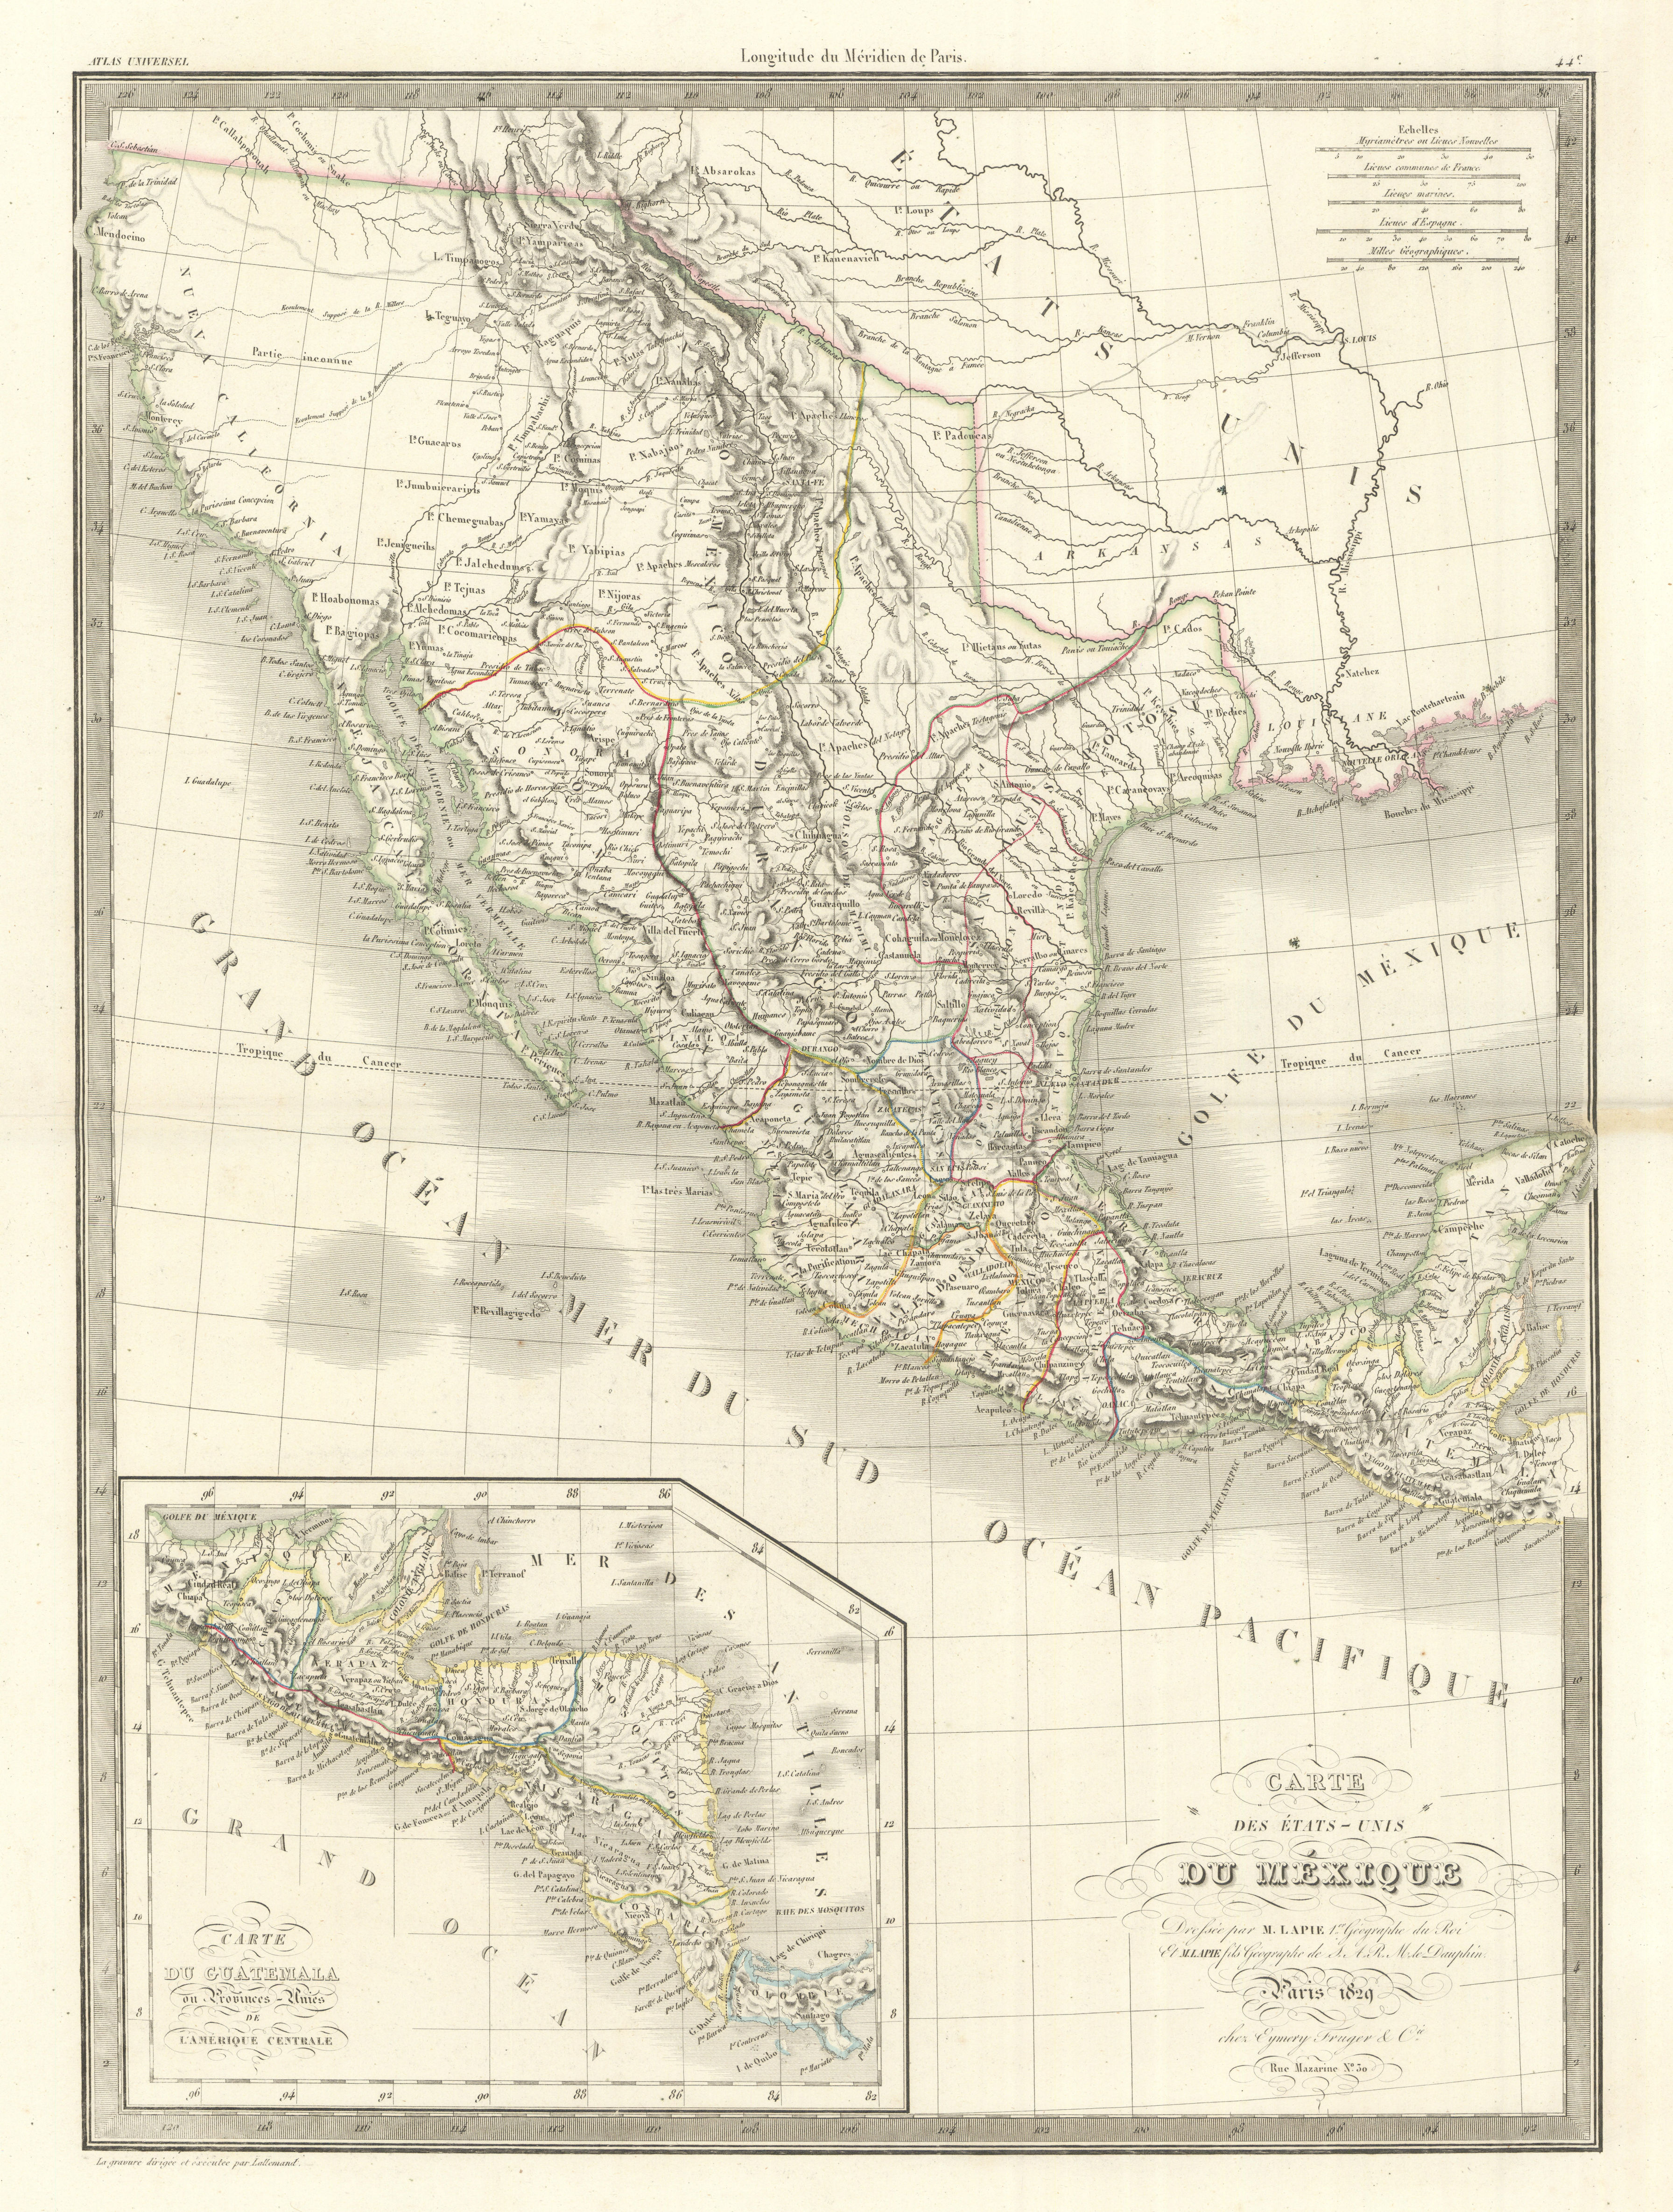 Associate Product Carte des Etats-Unis du Mexique & Guatemala. Mexico USA Southwest LAPIE 1829 map